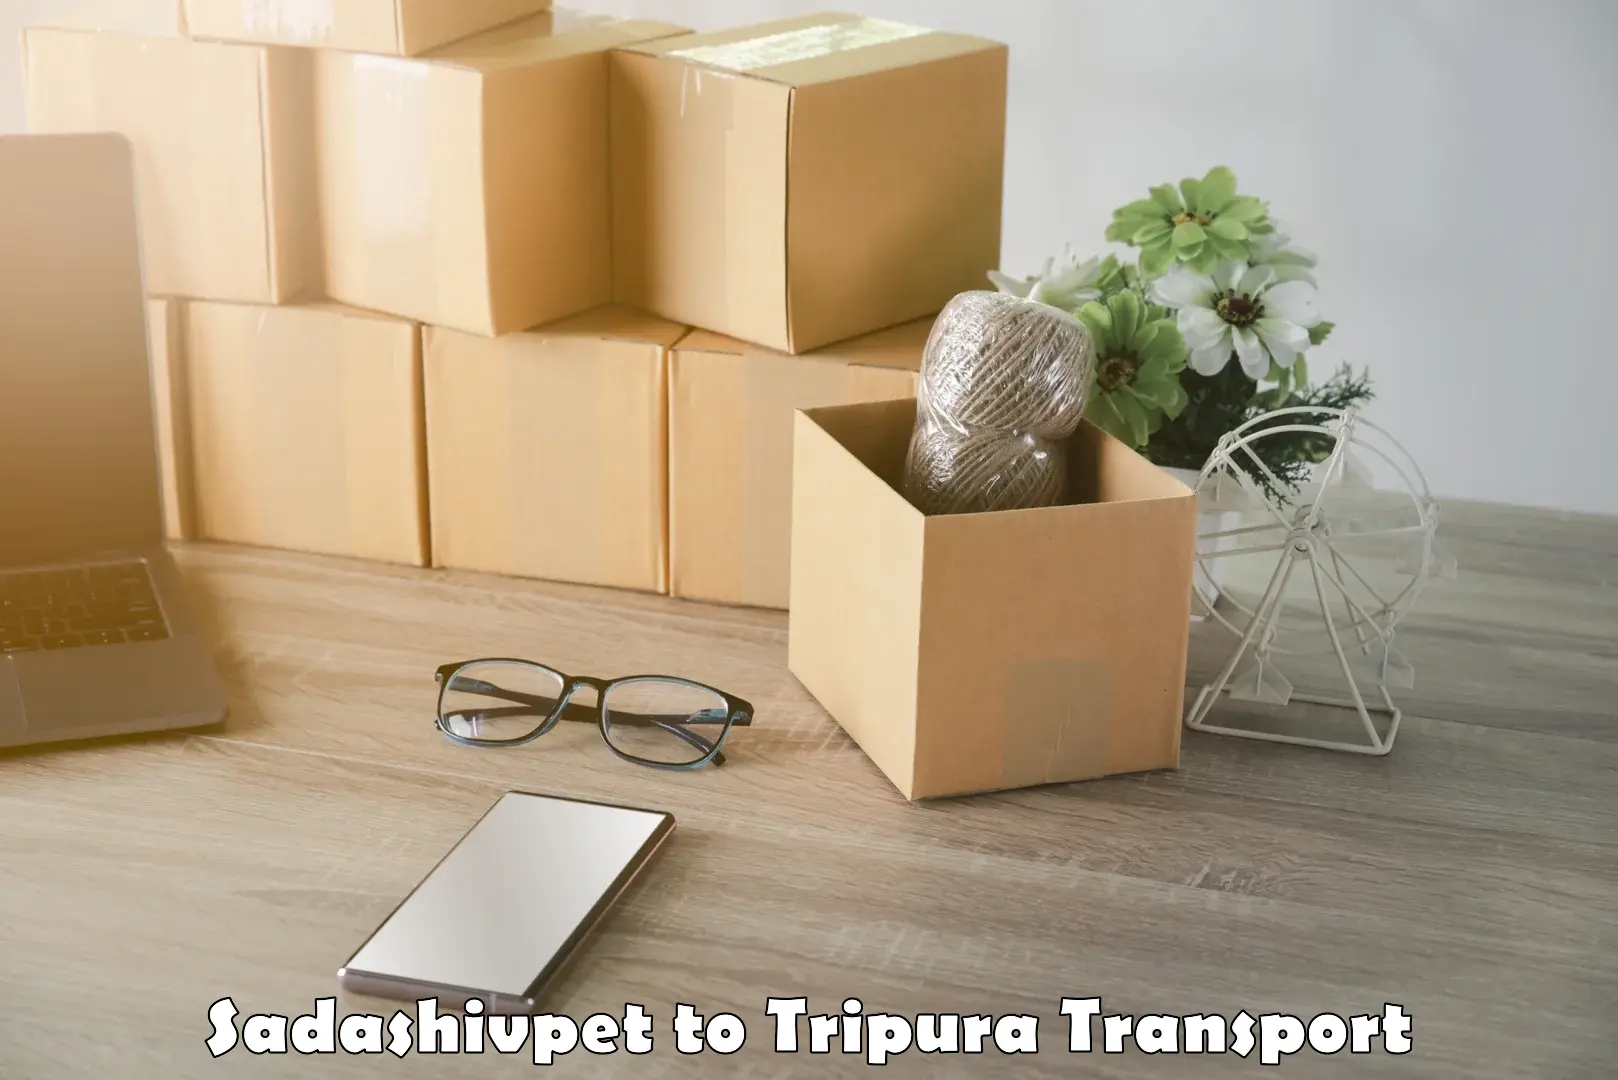 Online transport booking in Sadashivpet to Udaipur Tripura